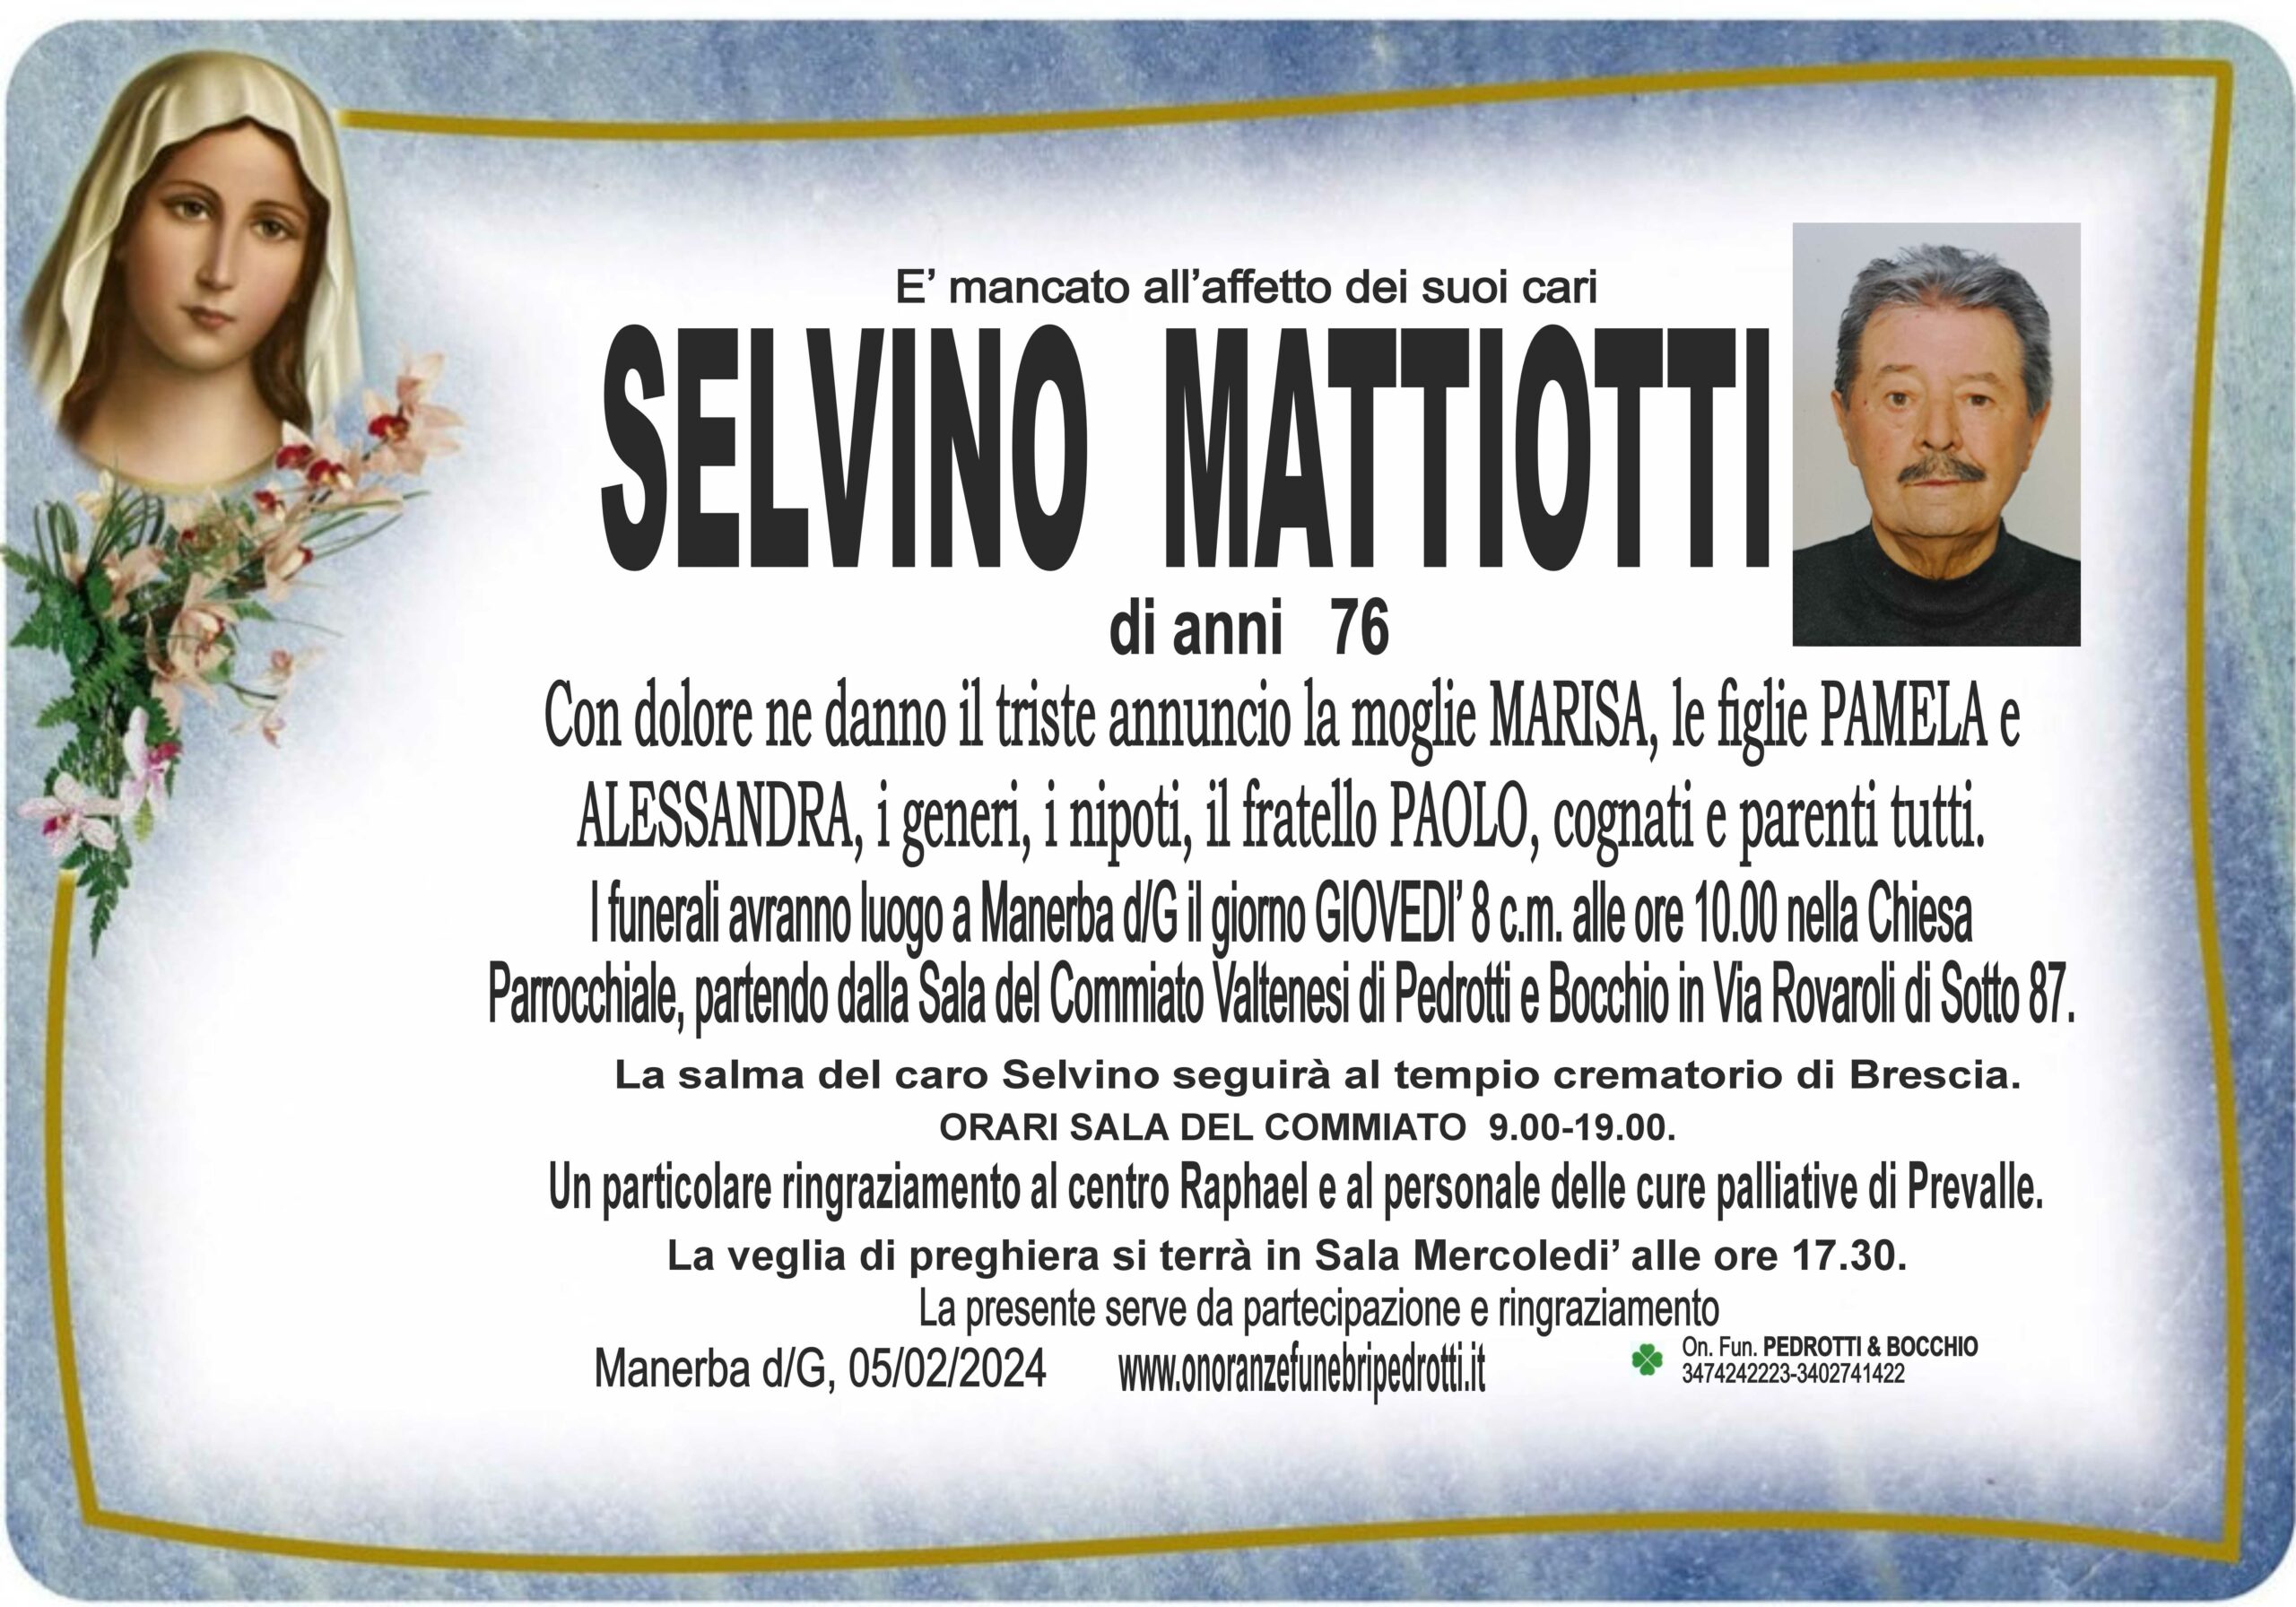 Al momento stai visualizzando Mattiotti Selvino